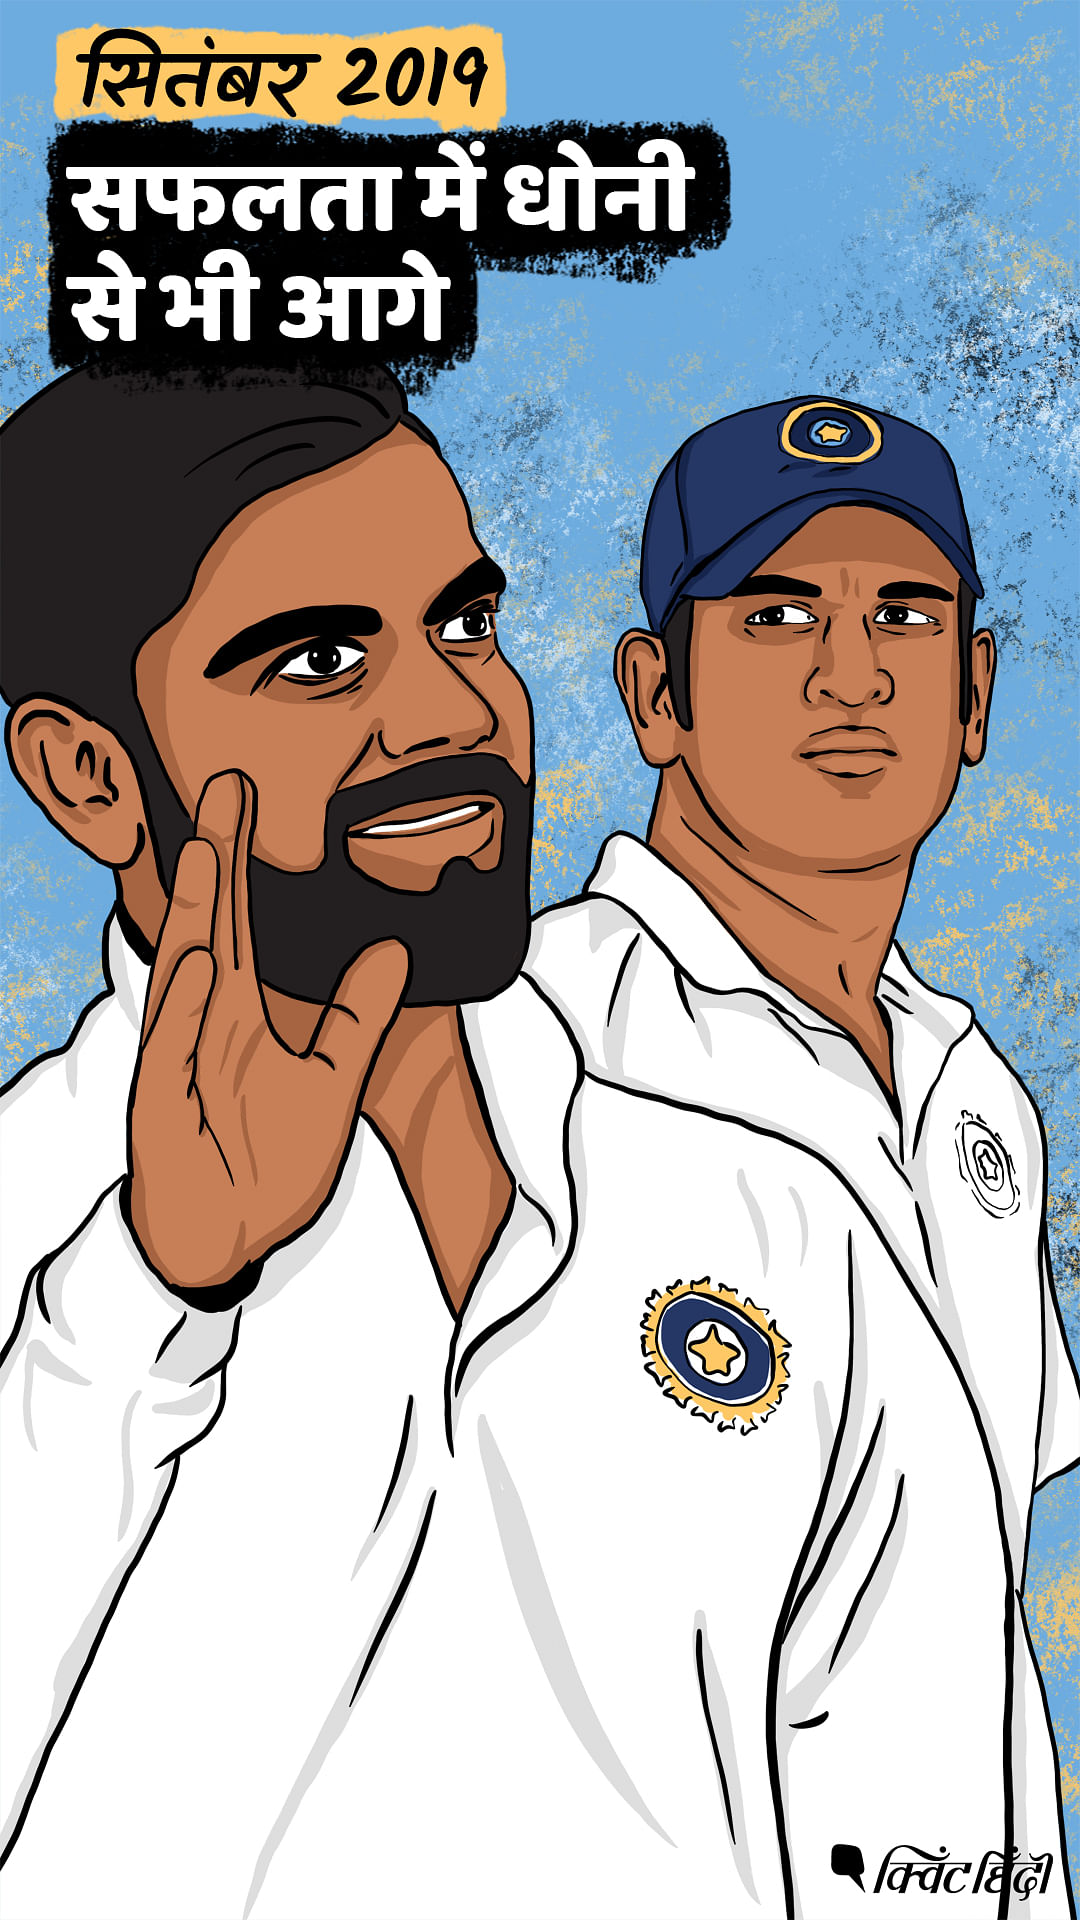 क्रिकेट जगत के सबसे बड़े स्टार विराट कोहली की कहानी ग्राफिक नॉवेल की जुबानी